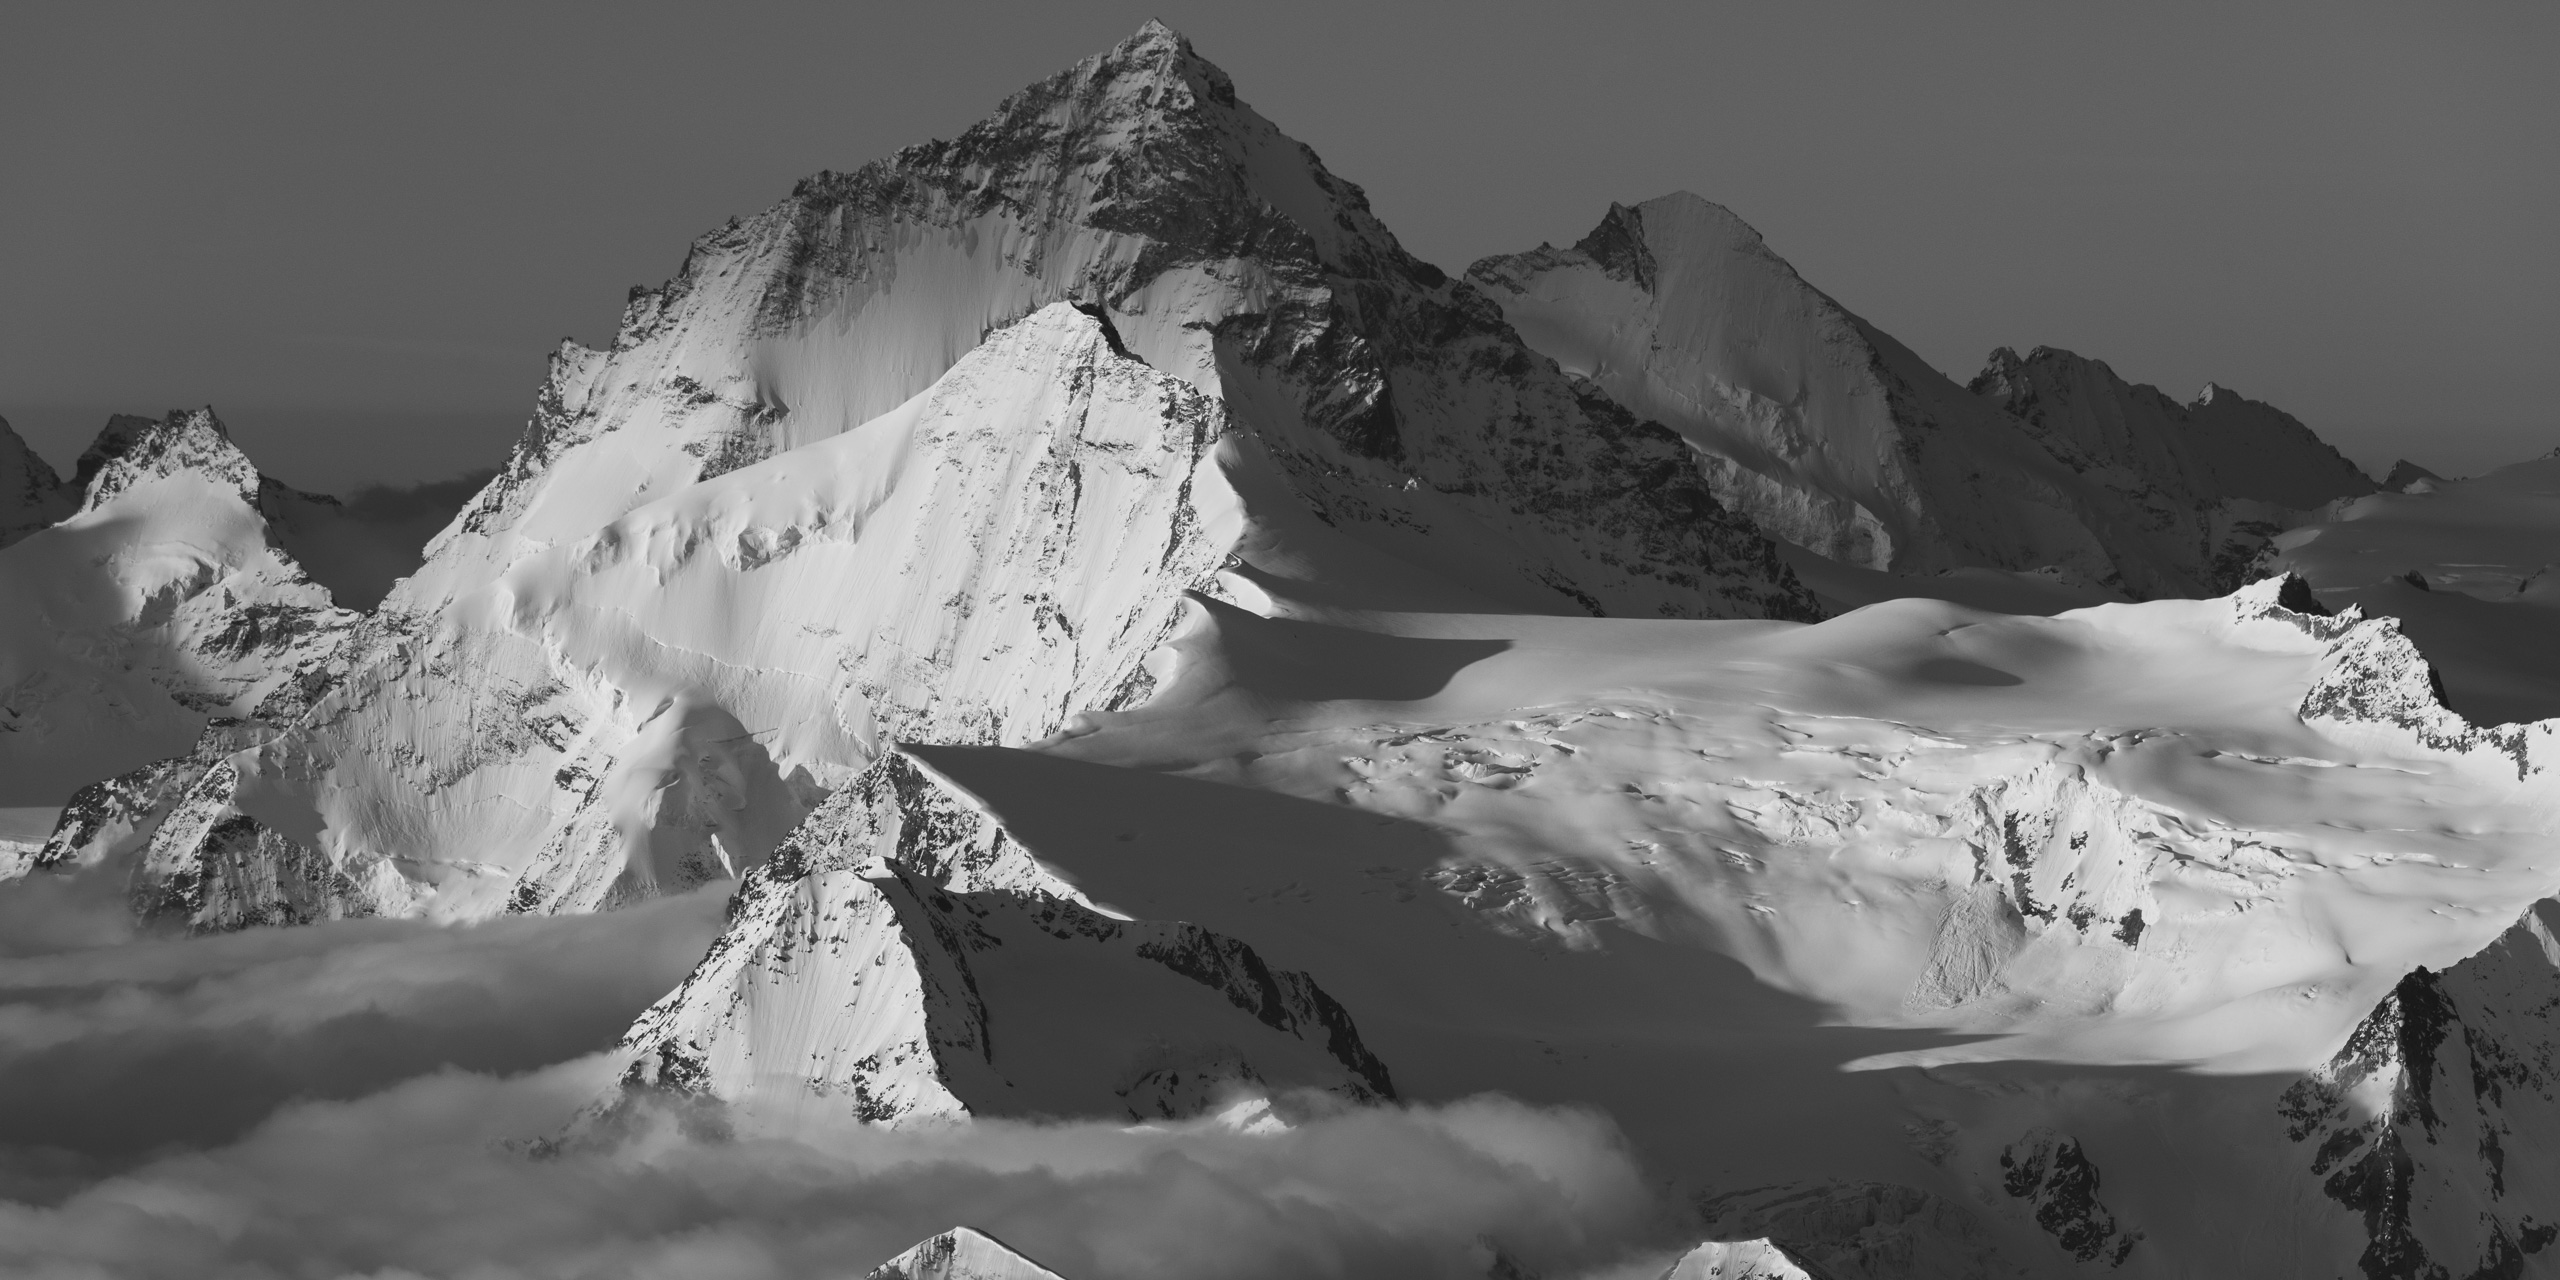 Panorama de montagne dans les Alpes Valaisannes en noir et blanc - Crans Montana - Val d’Hérens